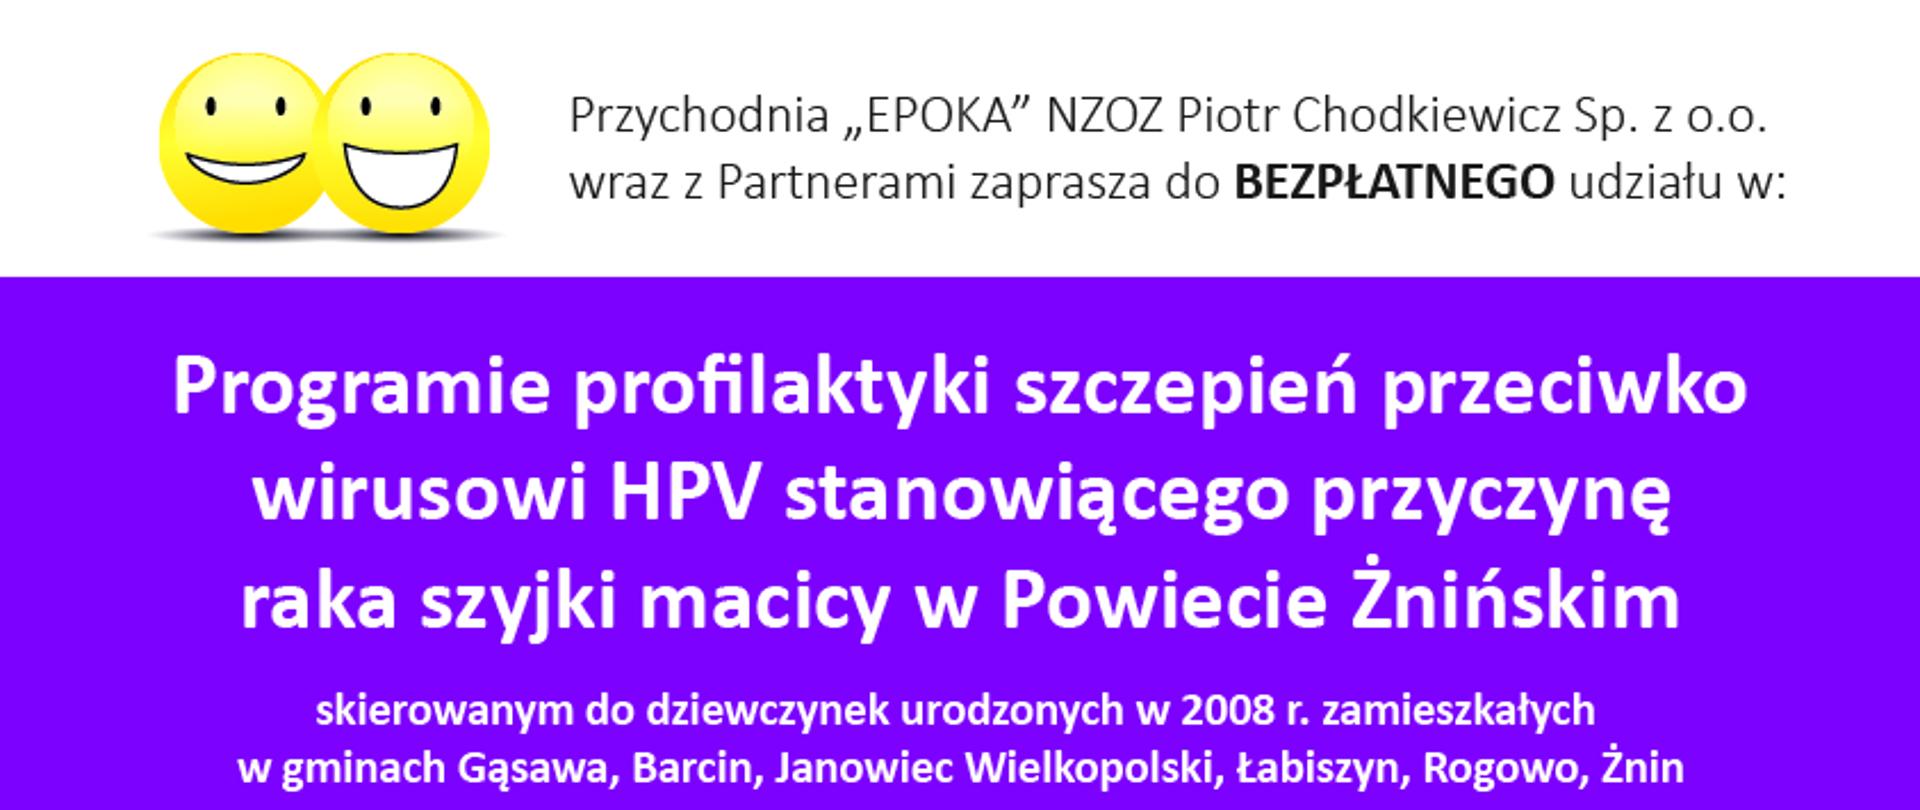 Program profilaktyki szczepień przeciwko wirusowi HPV stanowiącego przyczynę raka szyjki macicy w Powiecie Żnińskim - plakat